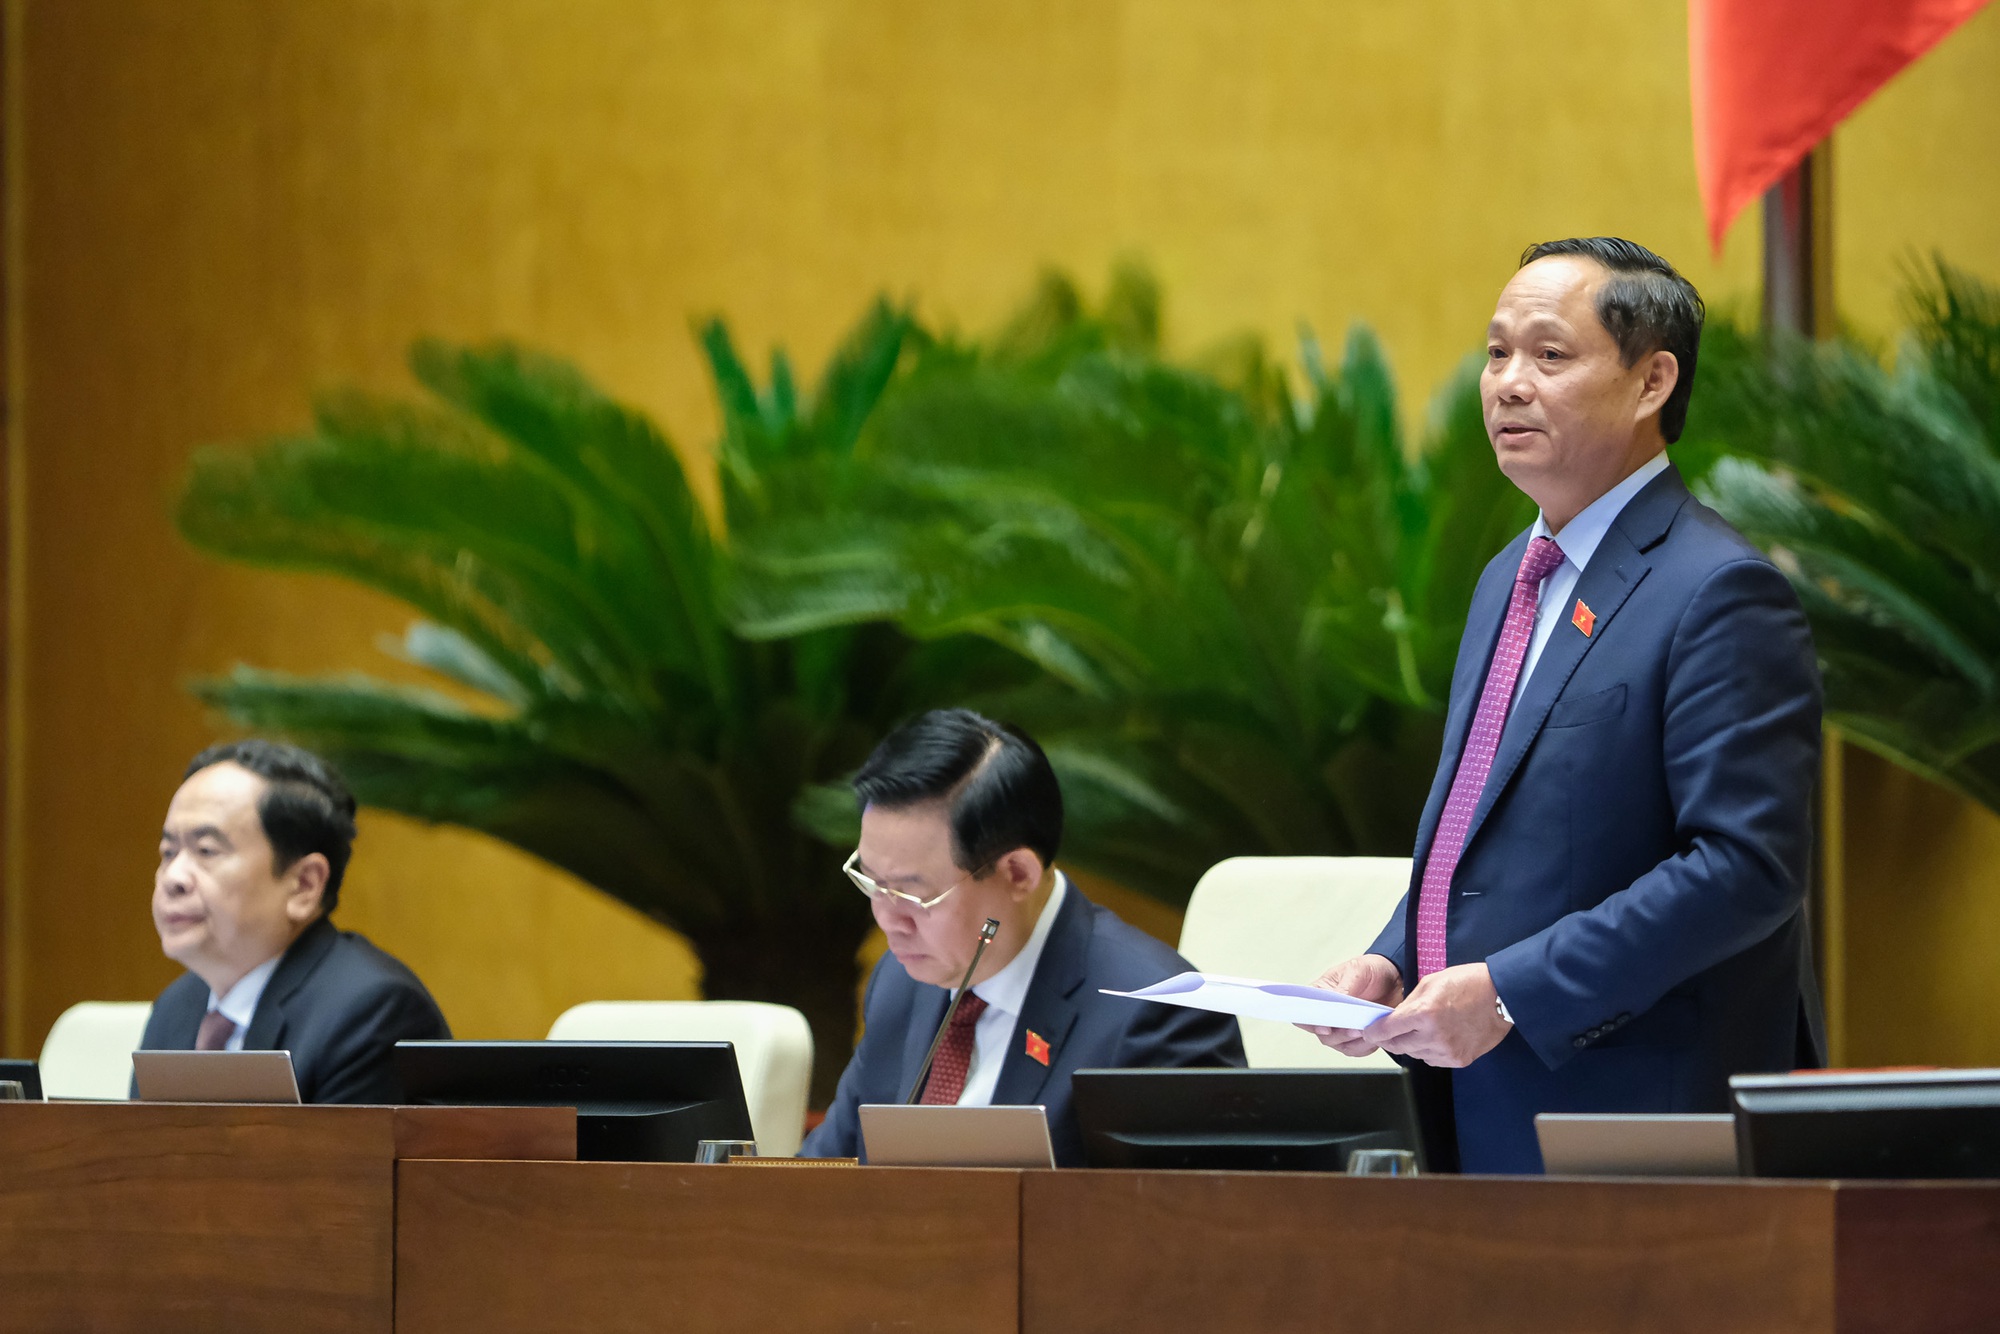 Bộ trưởng Lê Minh Hoan: Có lẽ do kỳ vọng nhiều nên khi gặp vướng chúng ta lại thất vọng hơi nhiều - Ảnh 1.